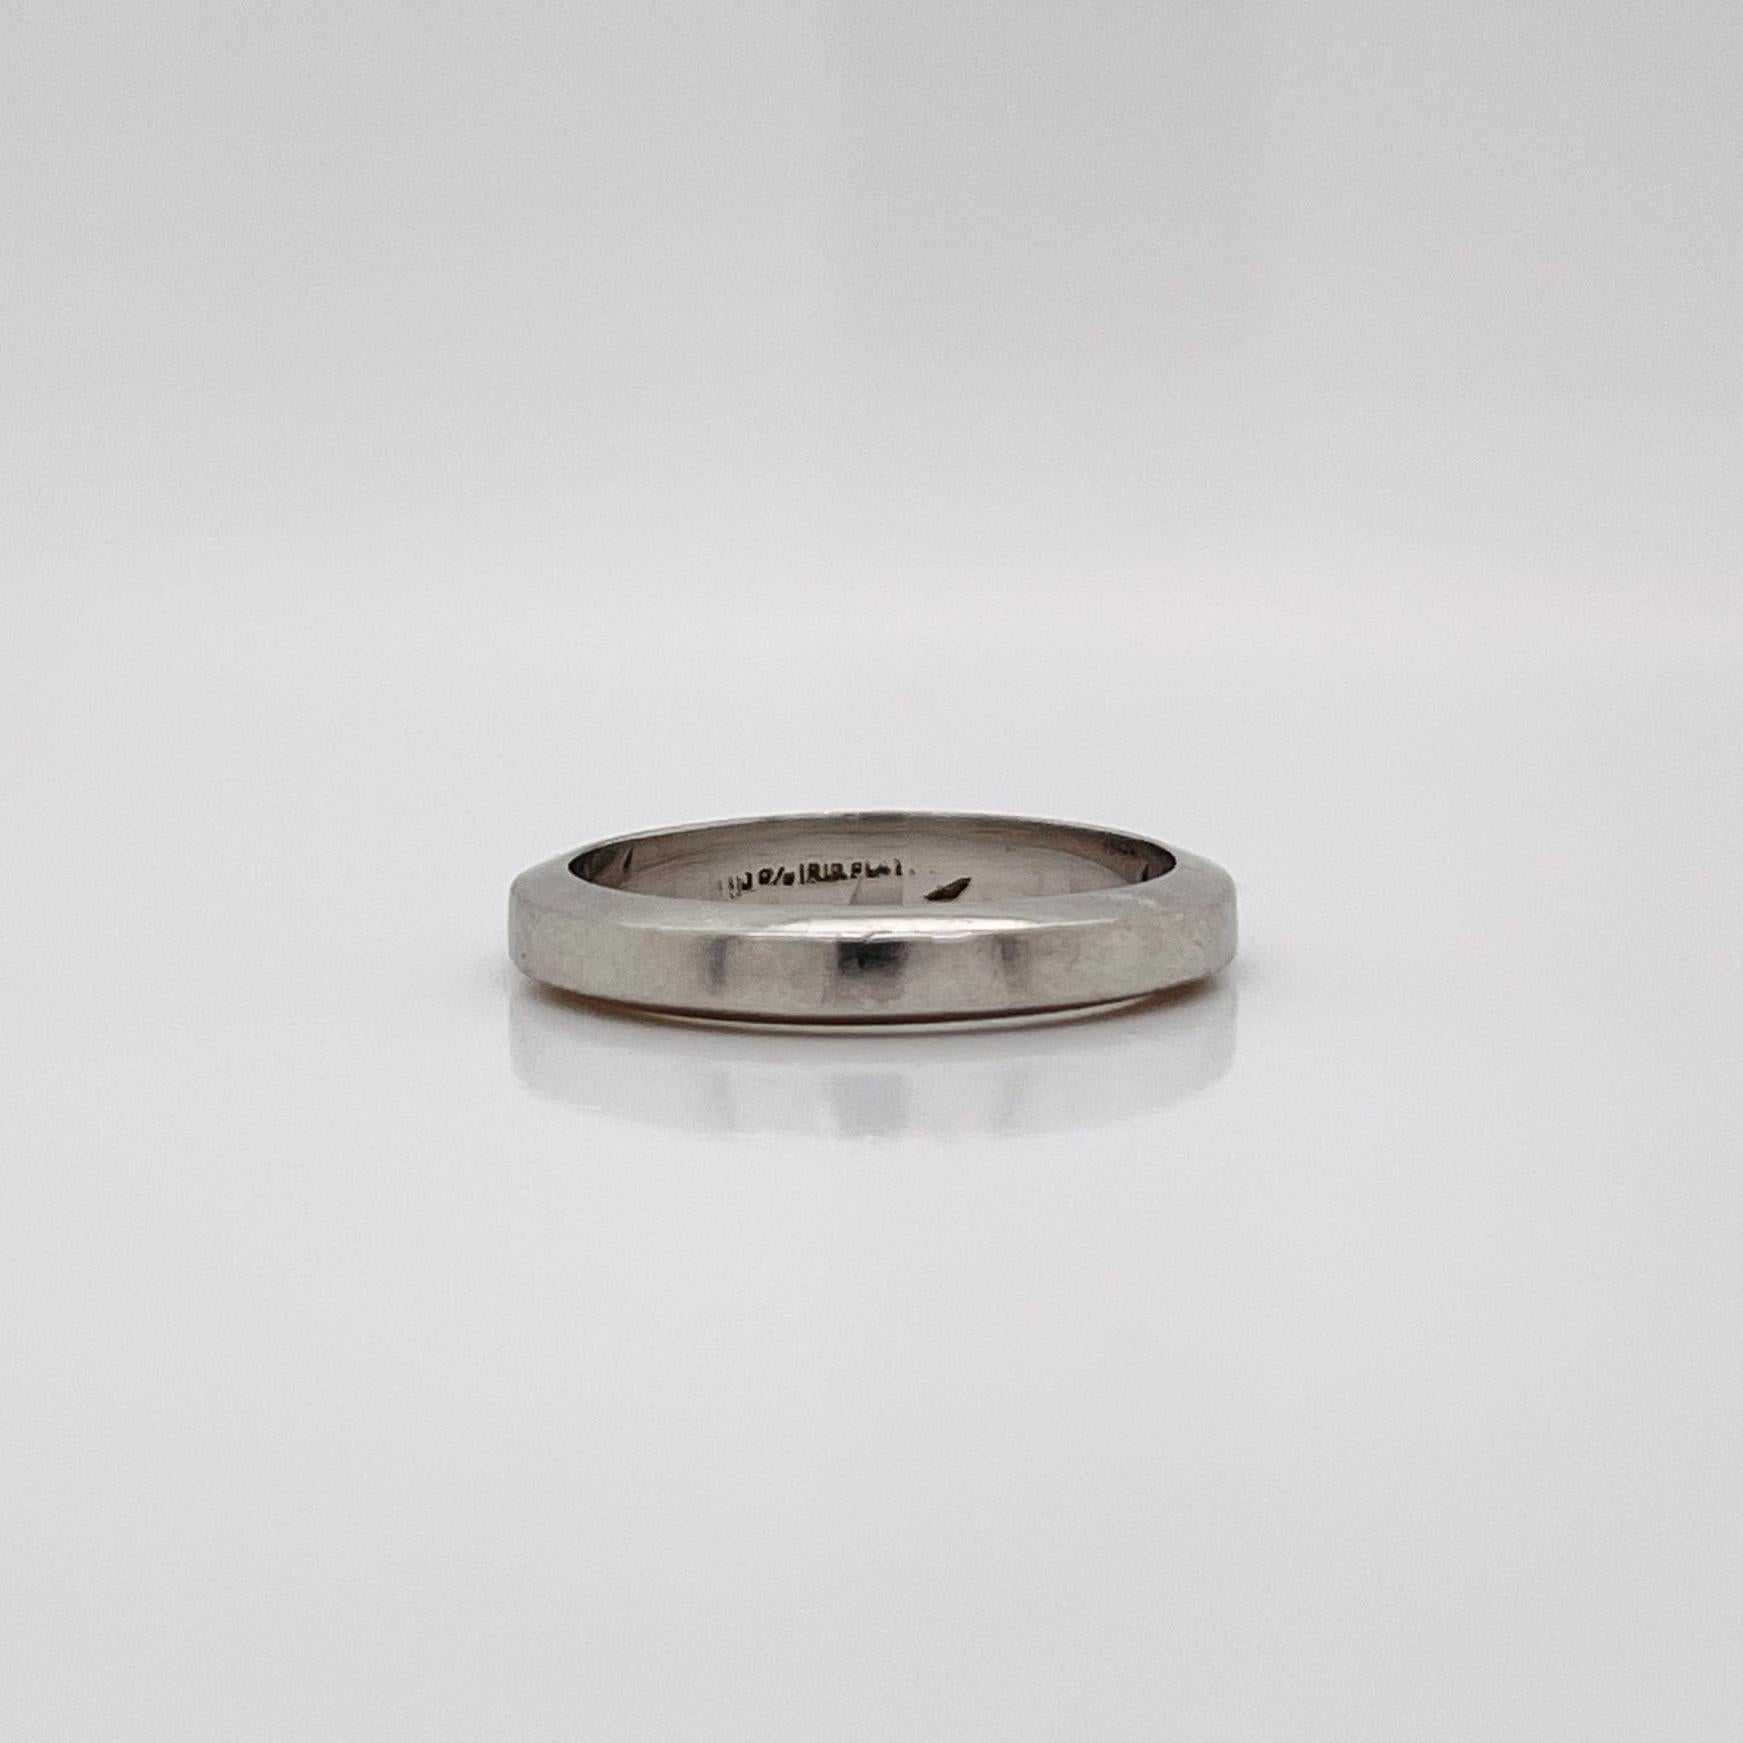 Ein sehr schöner Ring von Tiffany & Co.

In Form eines quadratischen Platinbandes.

Zusammen mit dem Original-Schmucketui.

Einfach eine wunderbare Tiffany & Co. Ring!

Datum:
20. Jahrhundert

Allgemeiner Zustand:
Es ist in insgesamt gut, wie